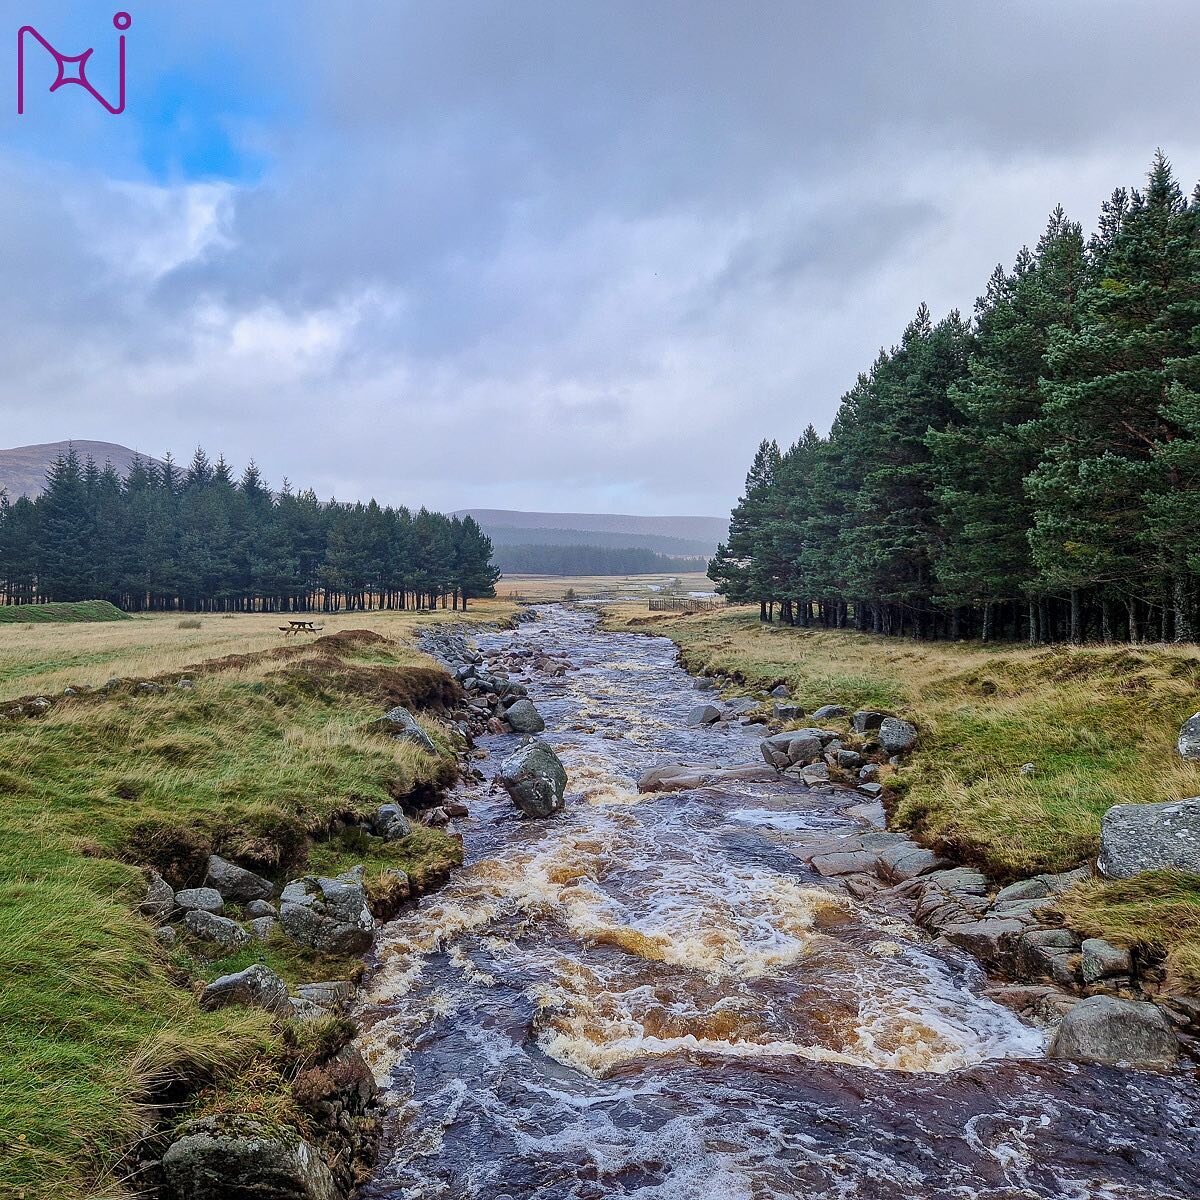 River Muick, Scotland #northstartransition #scotlandtransitionlab #water #biodiversity #systemschange